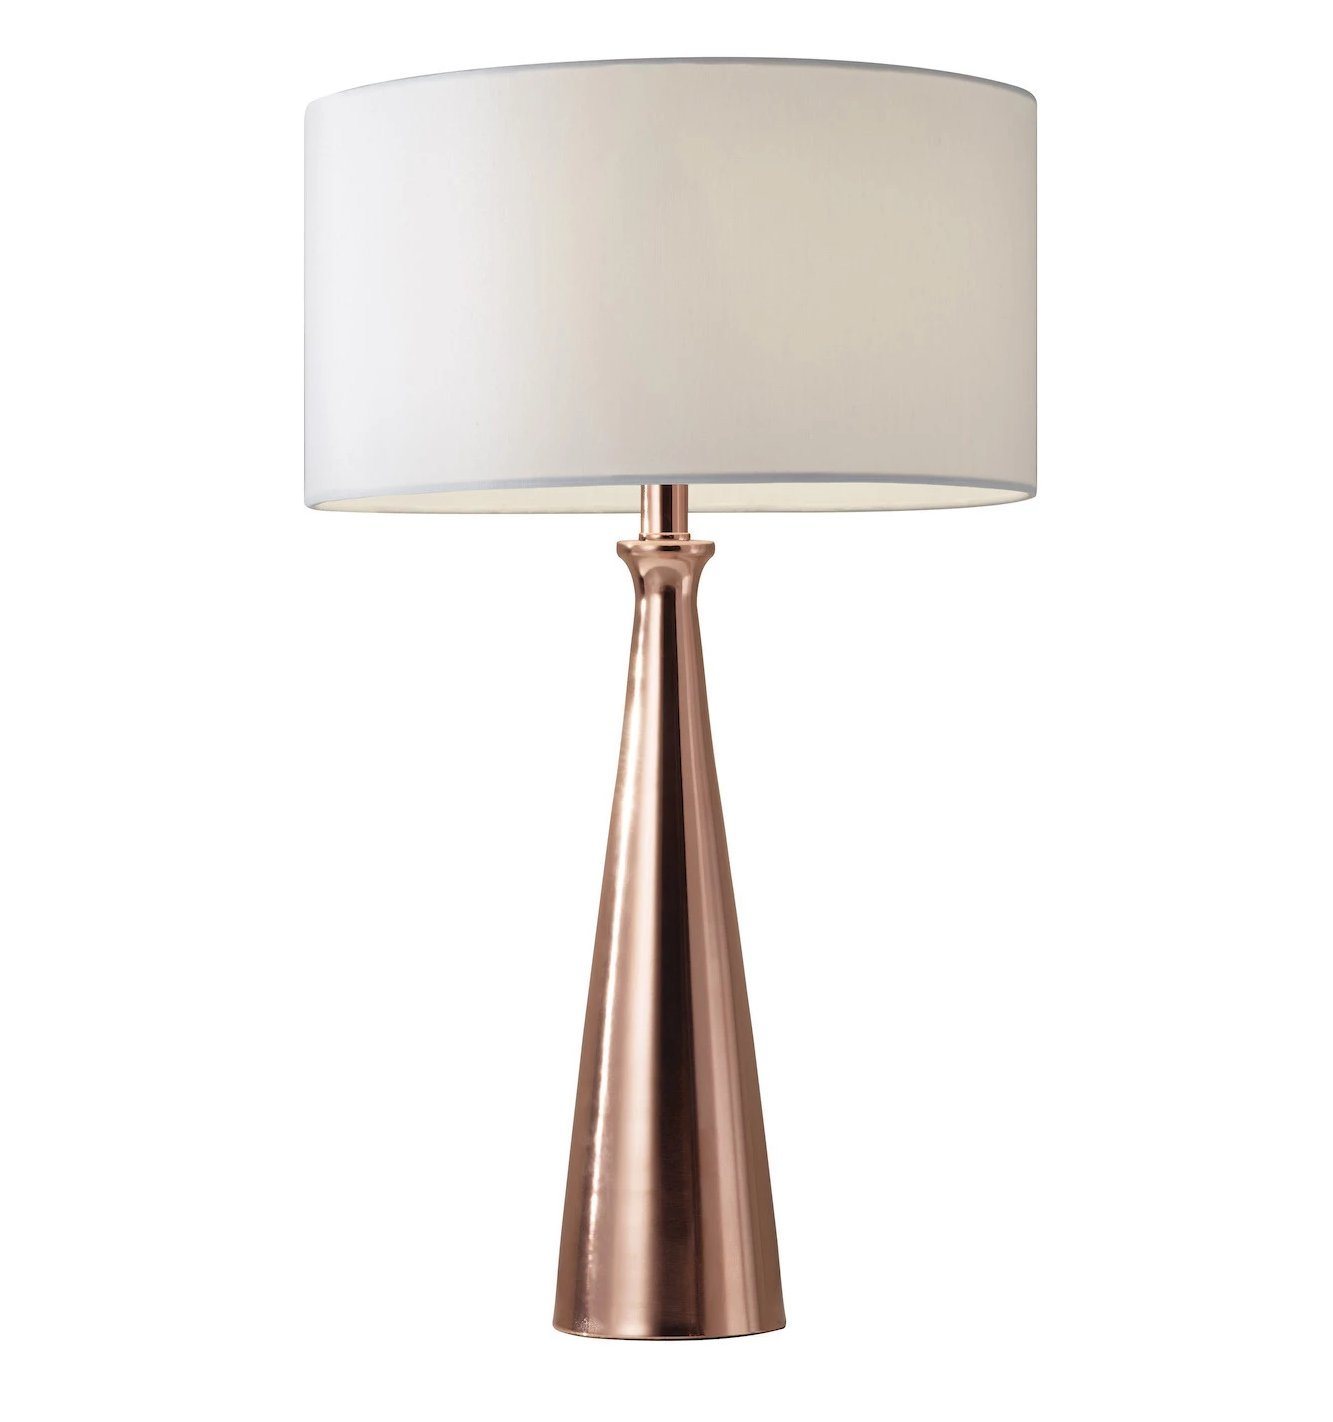 Linda Table Lamp - Copper Lamps Adesso Copper 